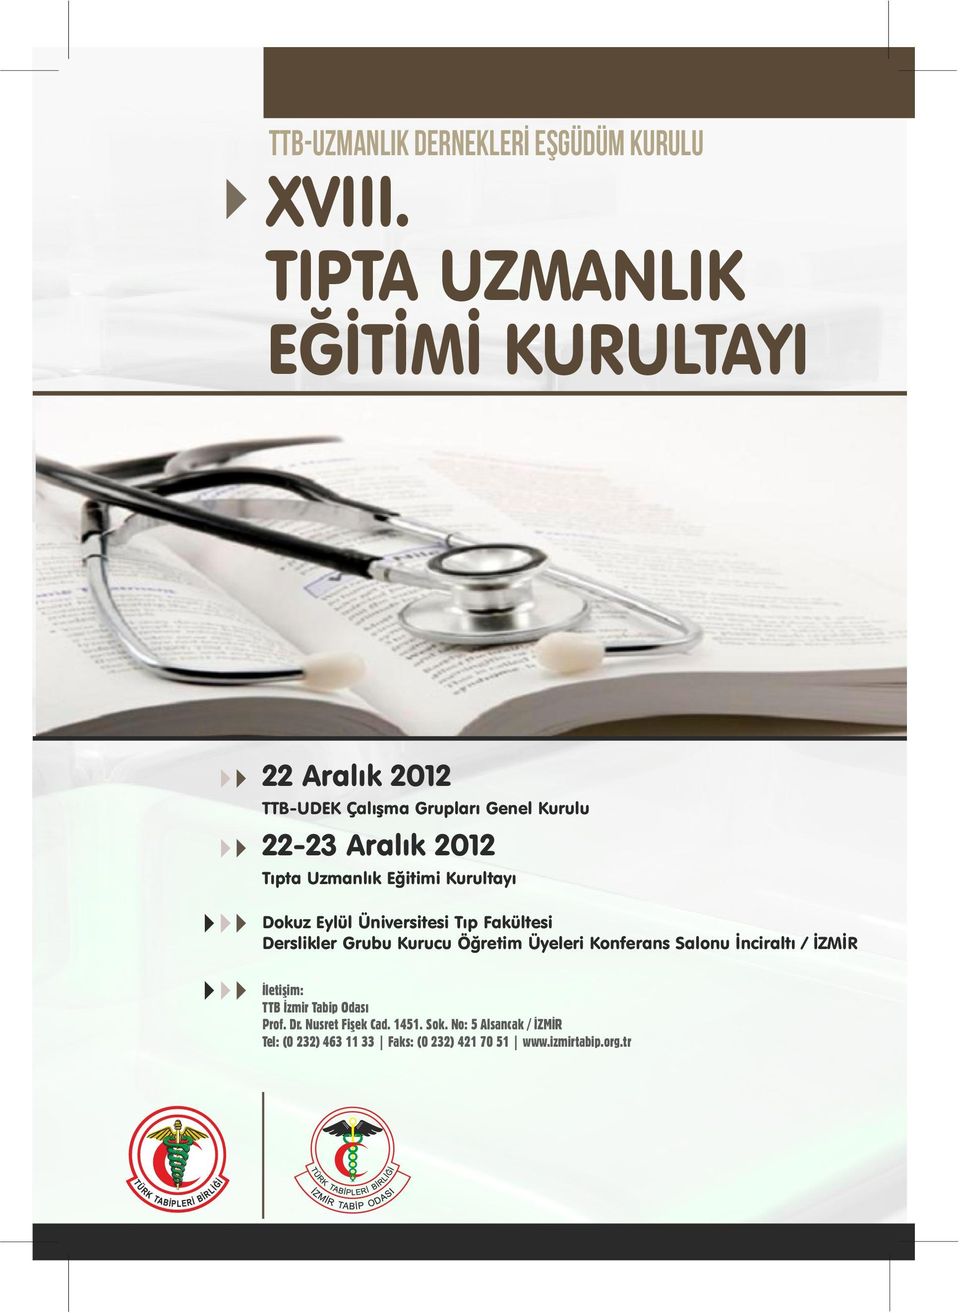 Öğretim Üyeleri Konferans Salonu İnciraltı / İZMİR İletişim: TTB İzmir Tabip Odası Prof. Dr.